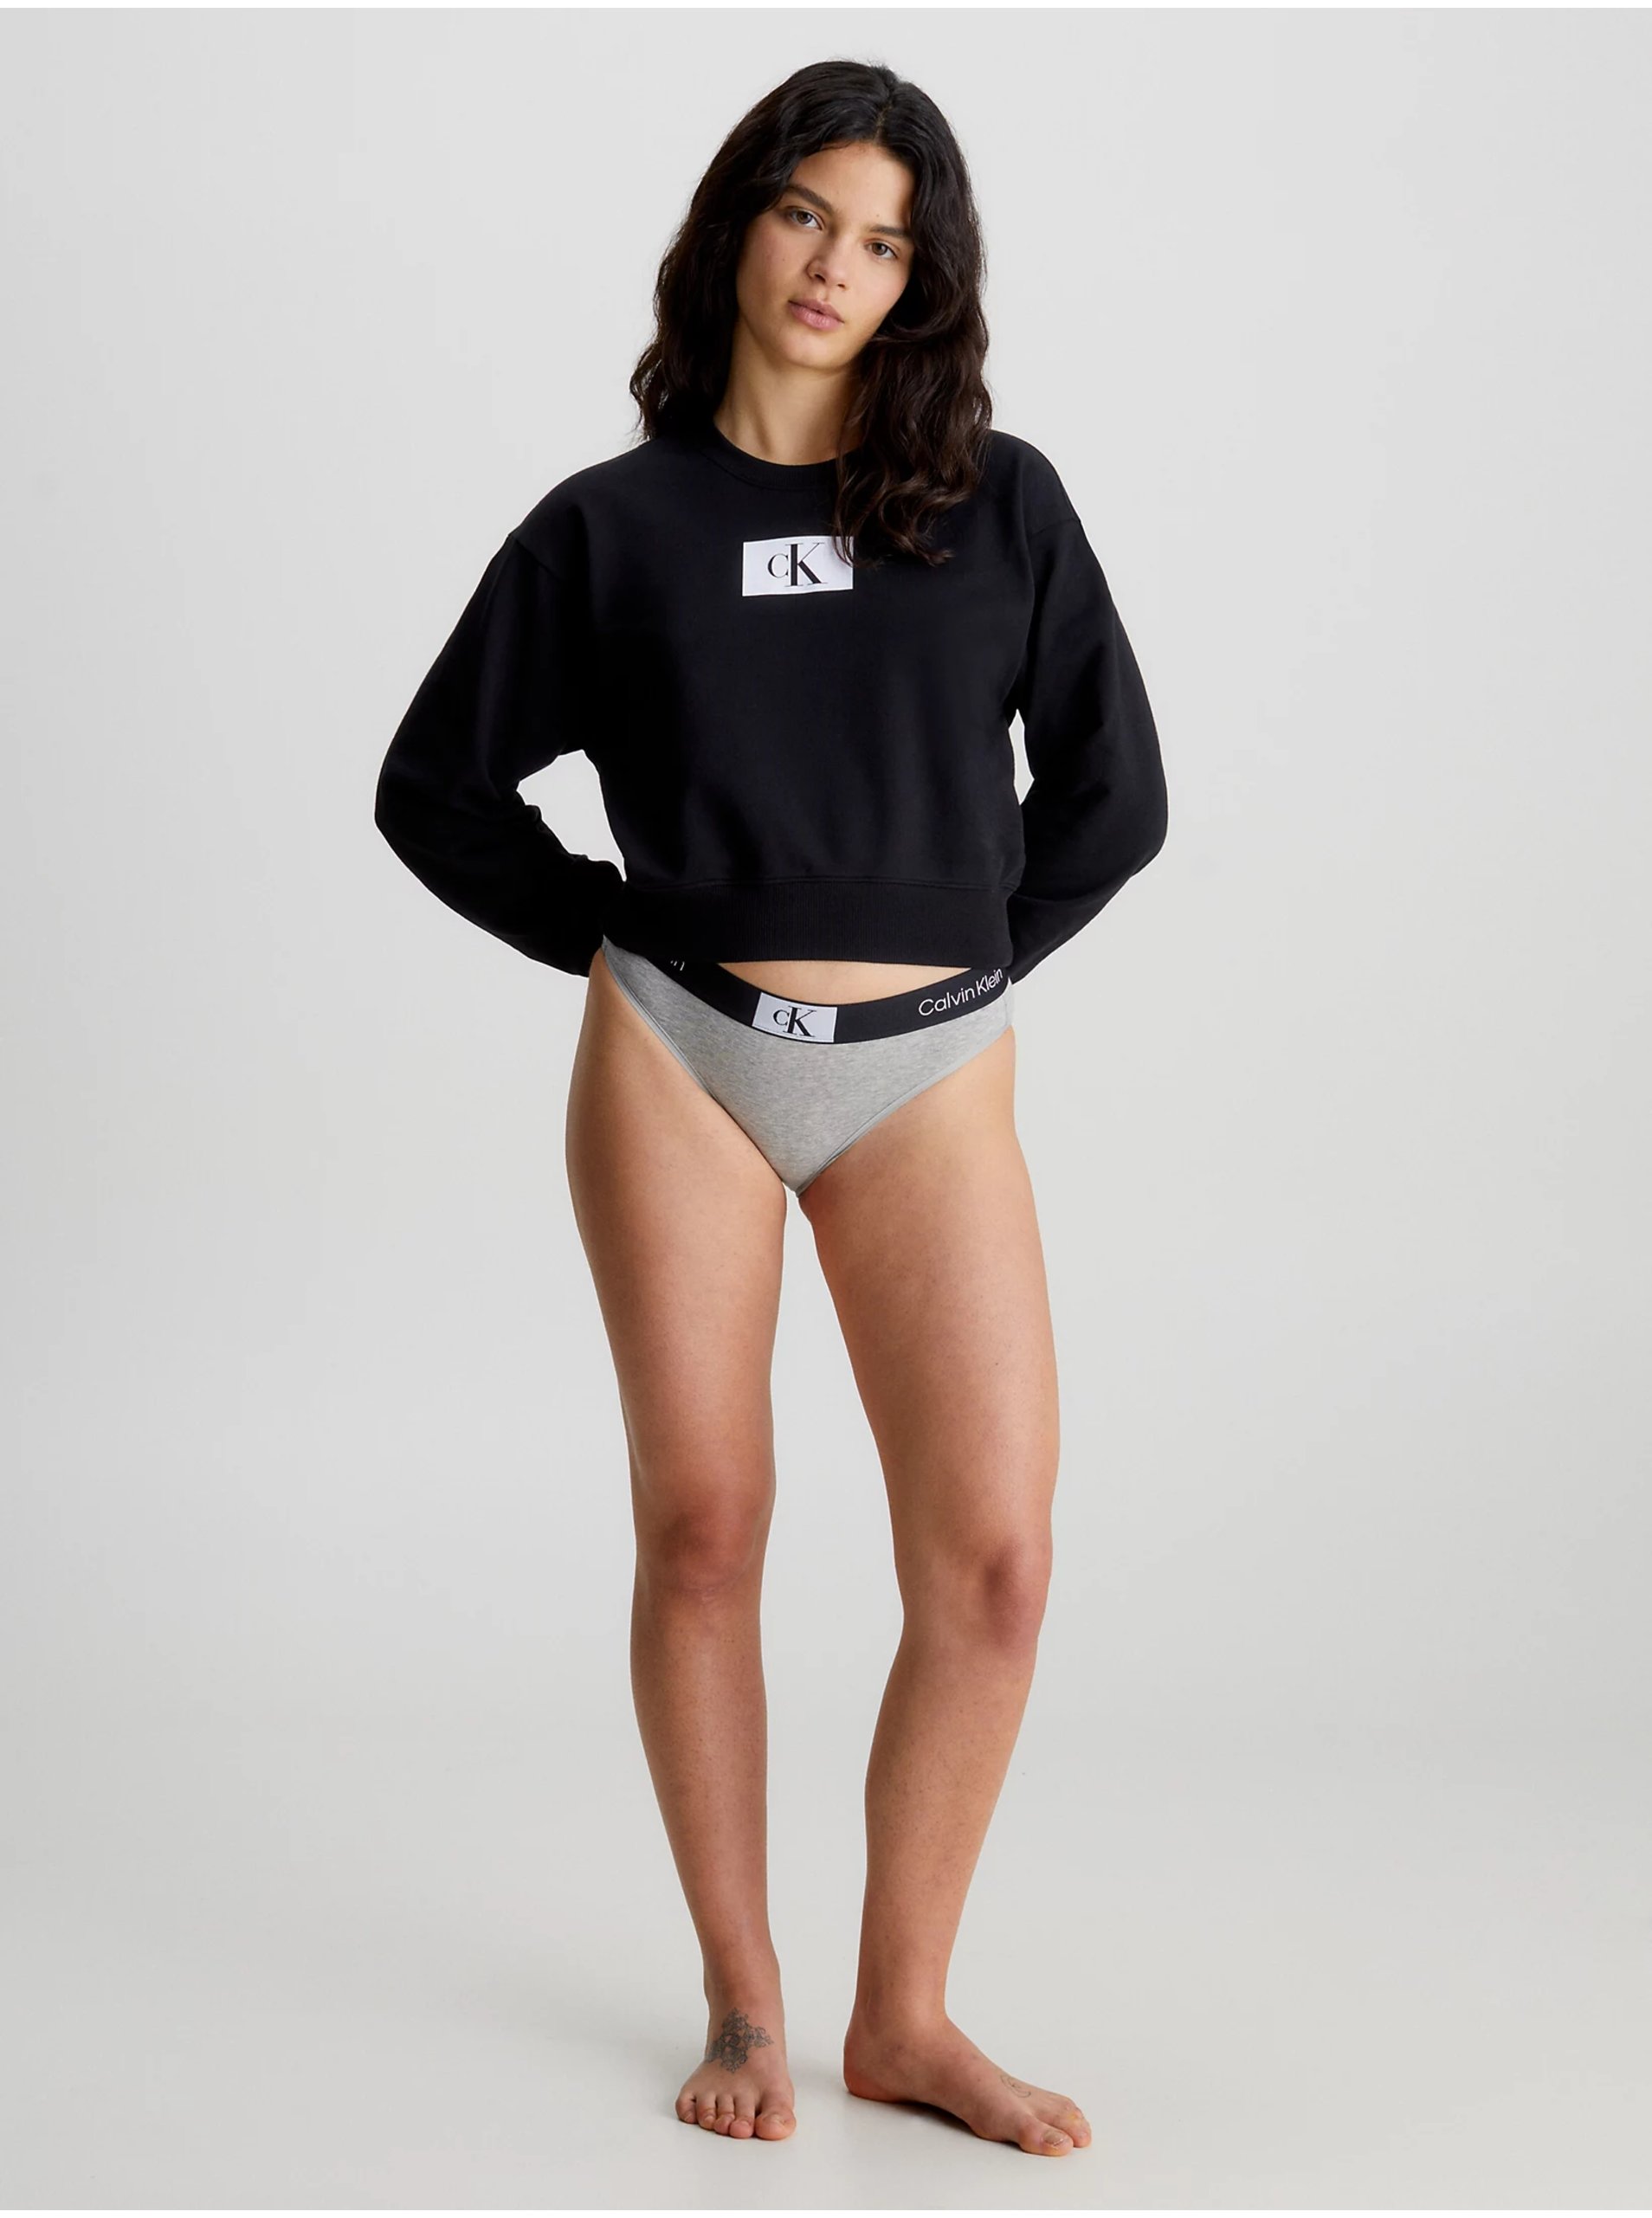 Black Women's Calvin Klein Underwear Sweatshirt - Women